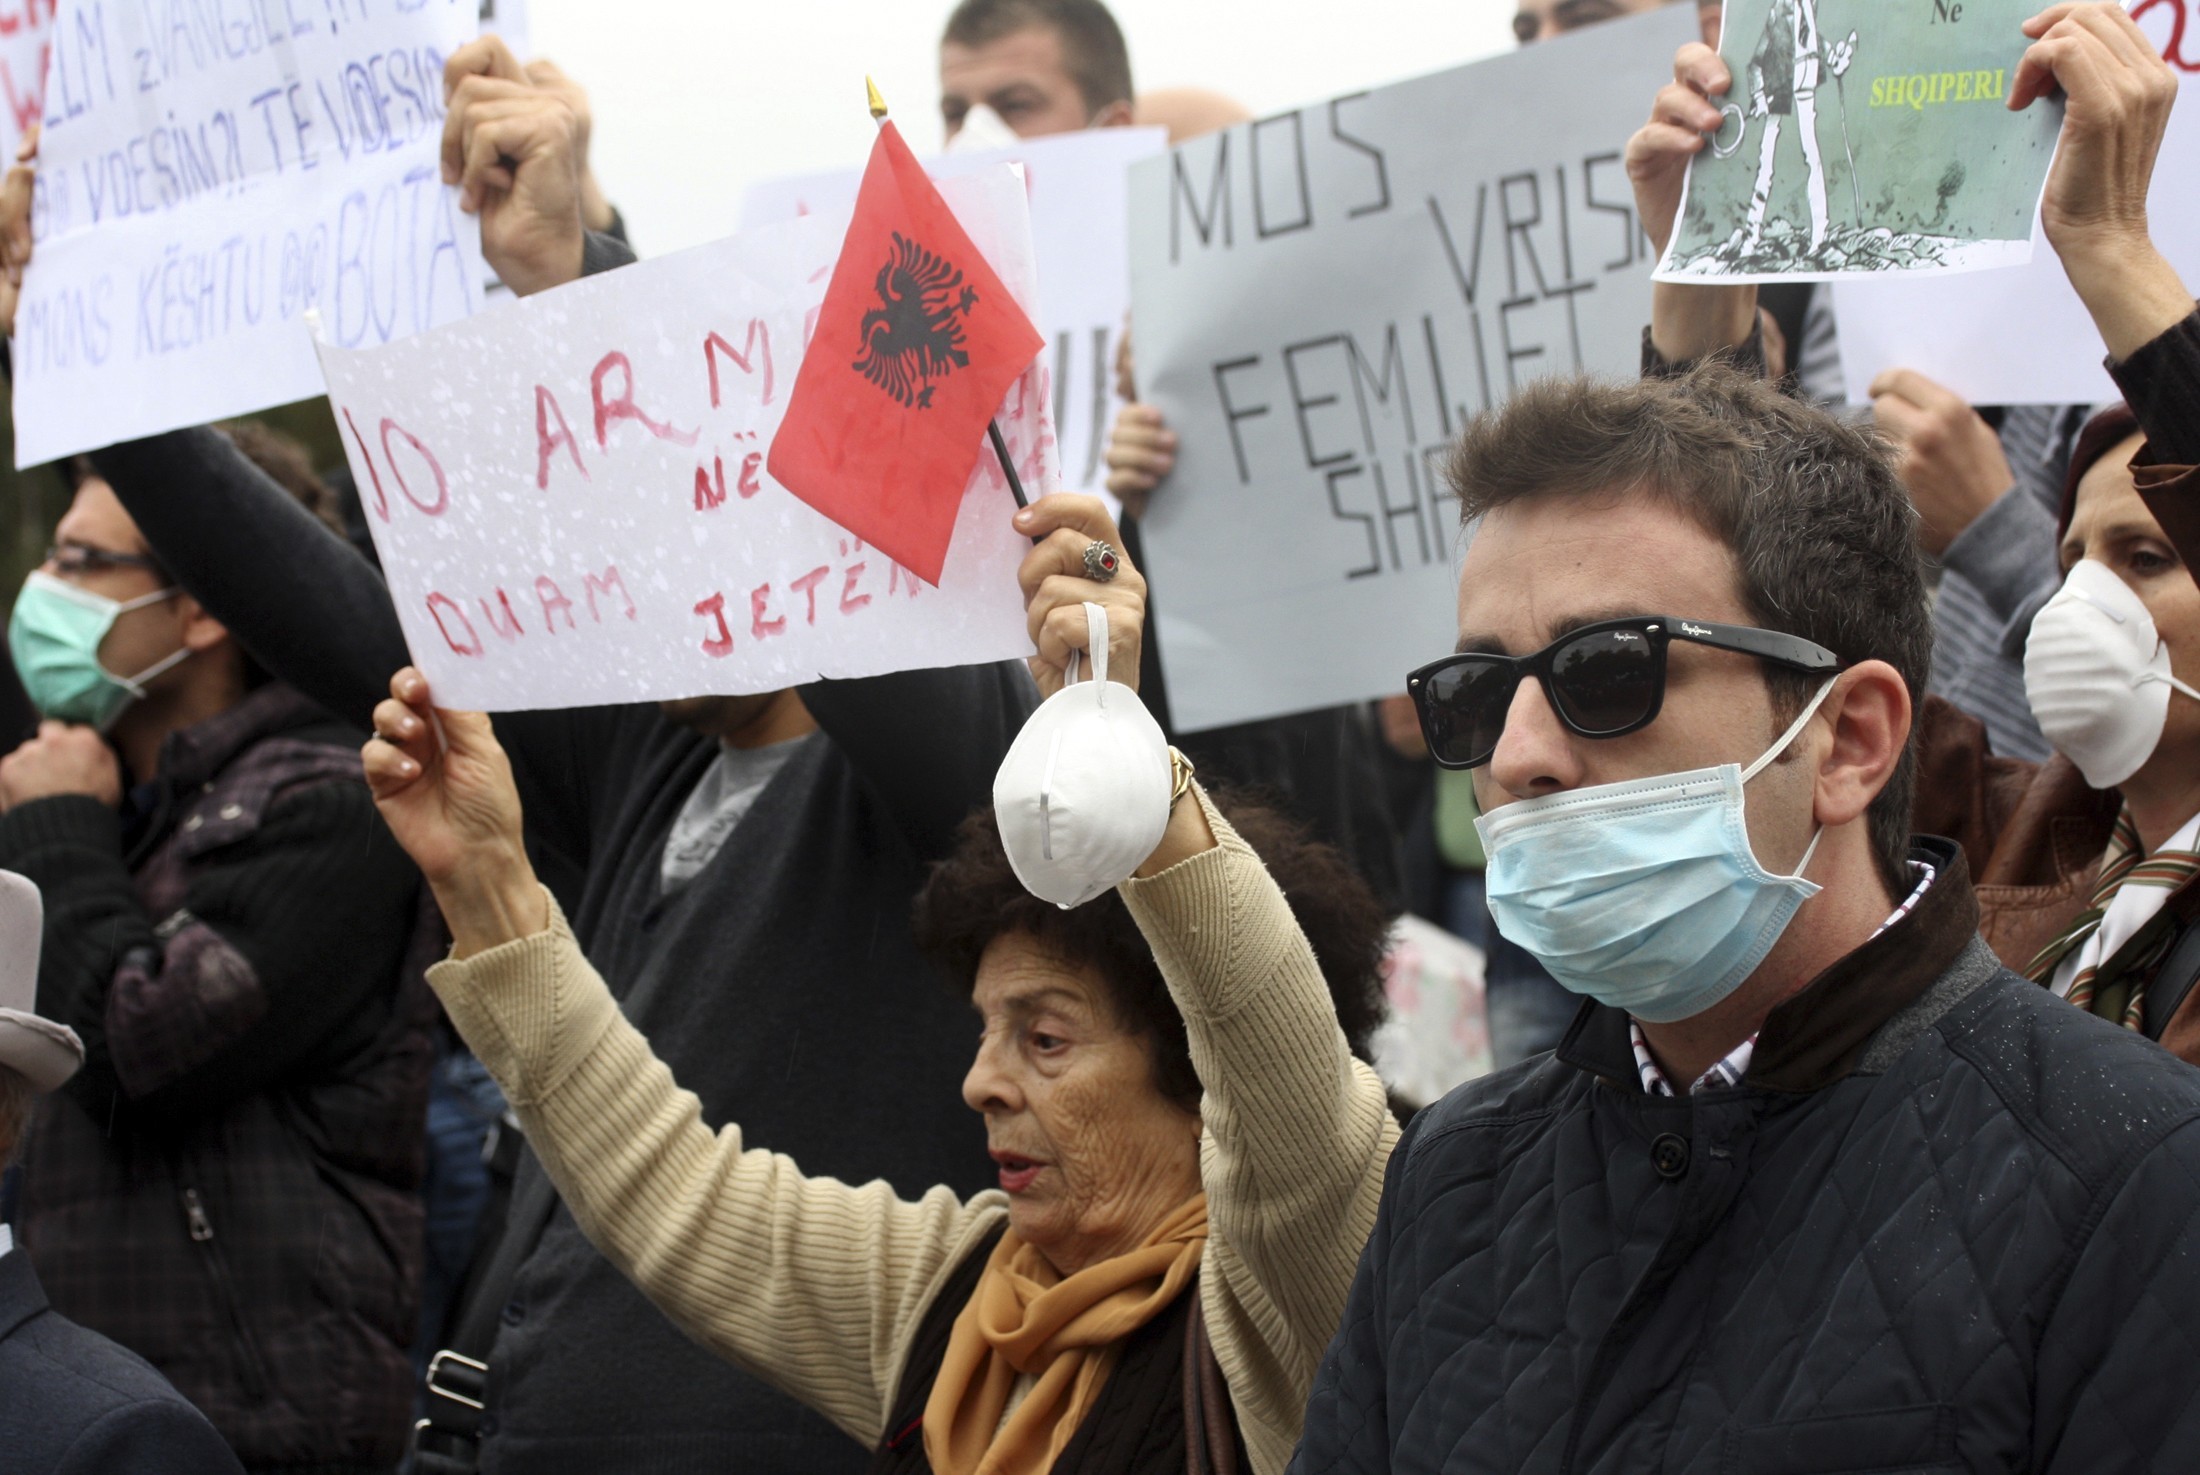 Συνεχίζονται οι διαδηλώσεις σε όλη την Αλβανία για την καταστροφή των συριακών χημκών όπλων